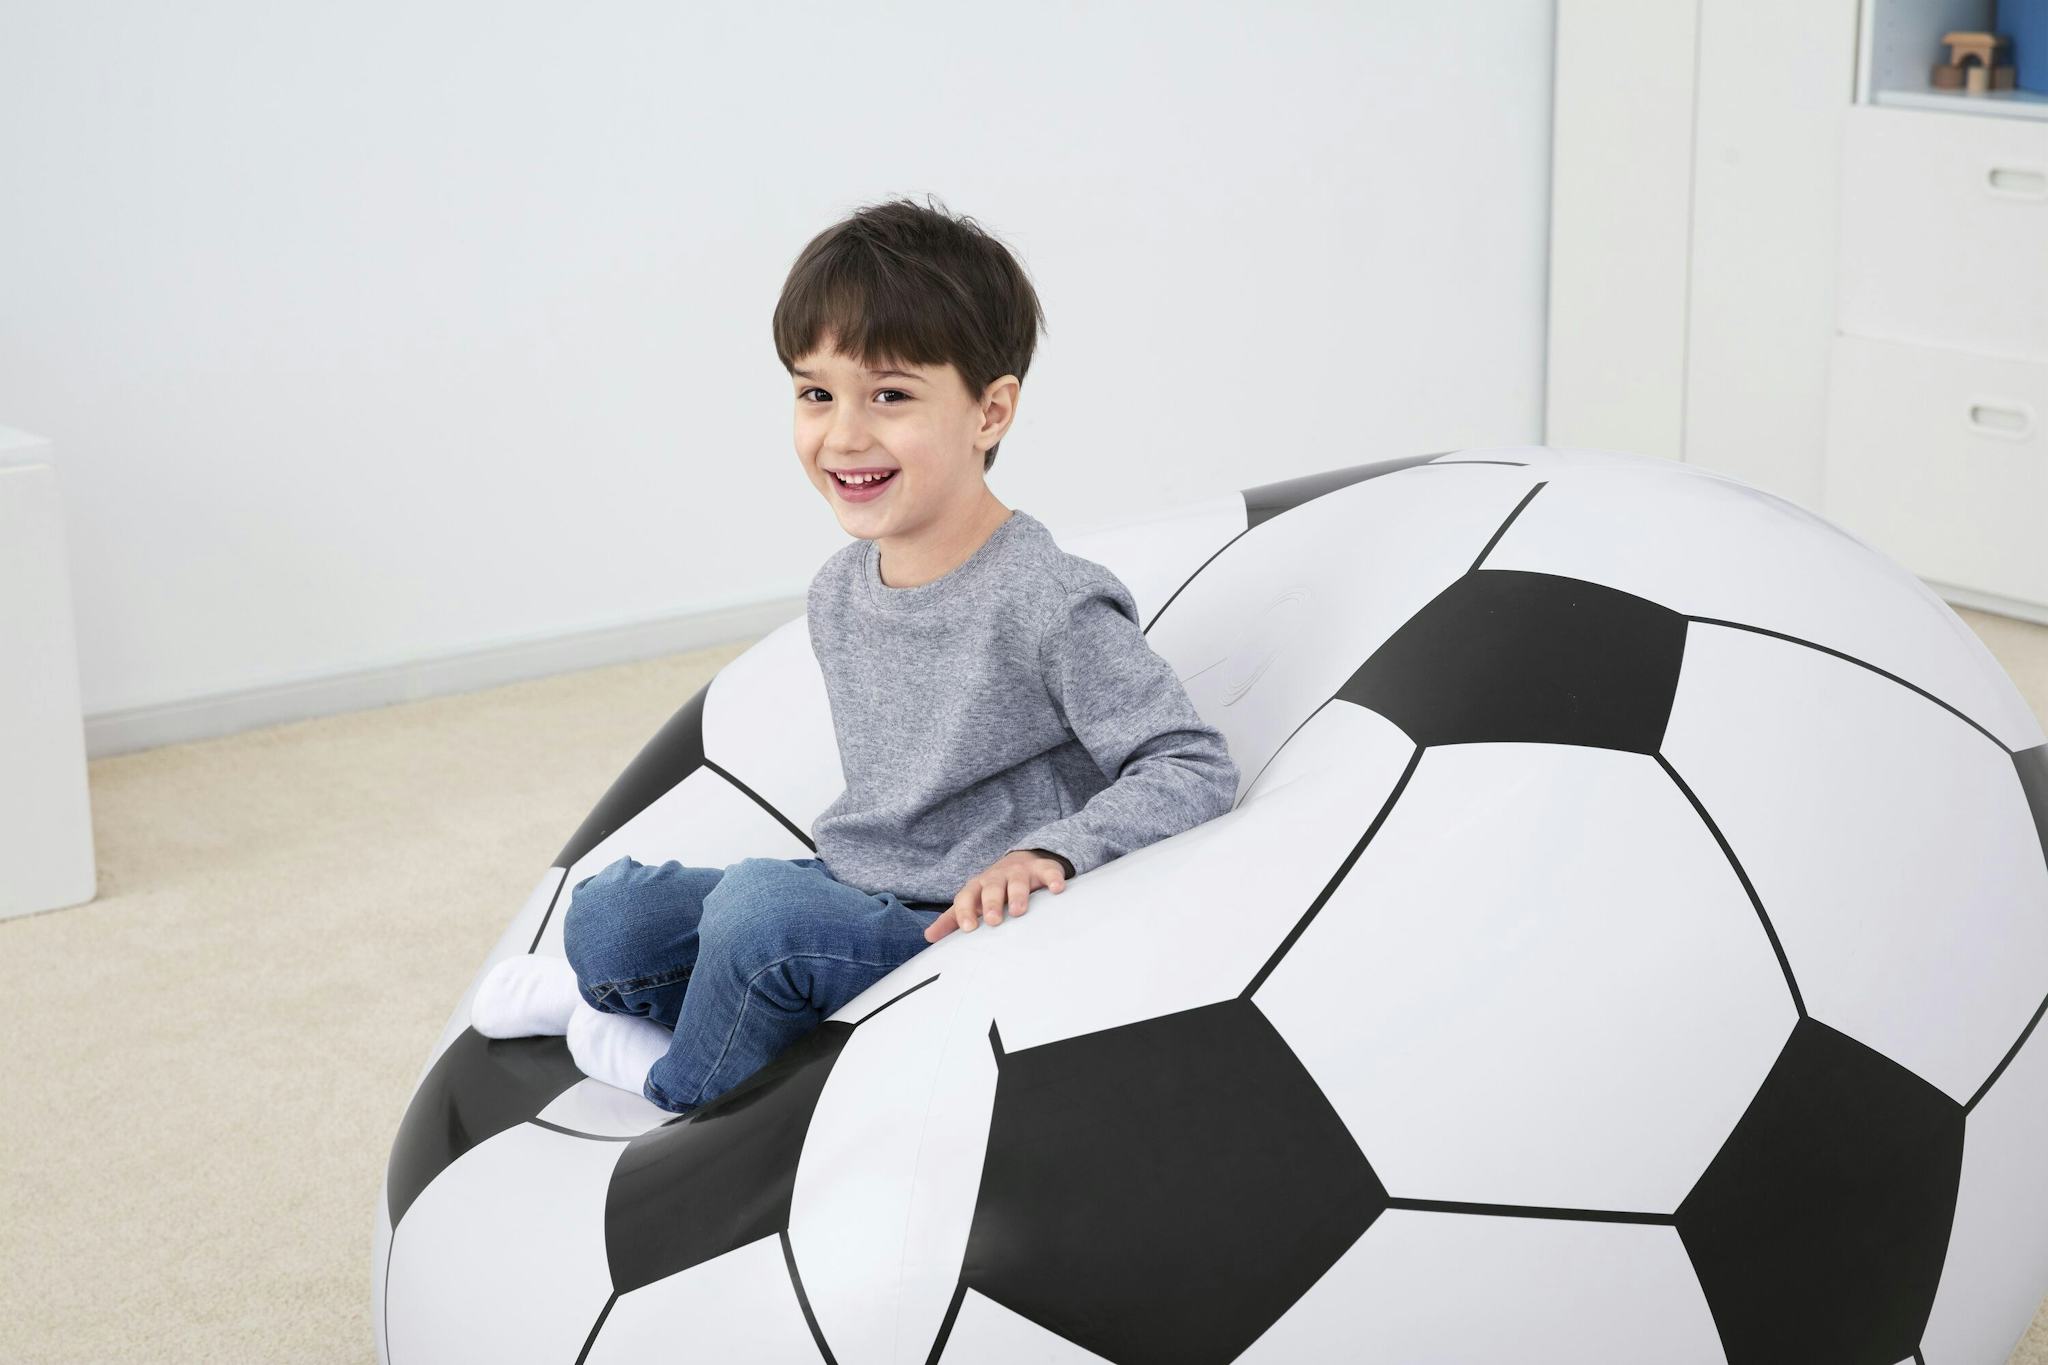 Giochi gonfiabili per bambini Poltrona pouf gonfiabile pallone da calcio Bestway 3